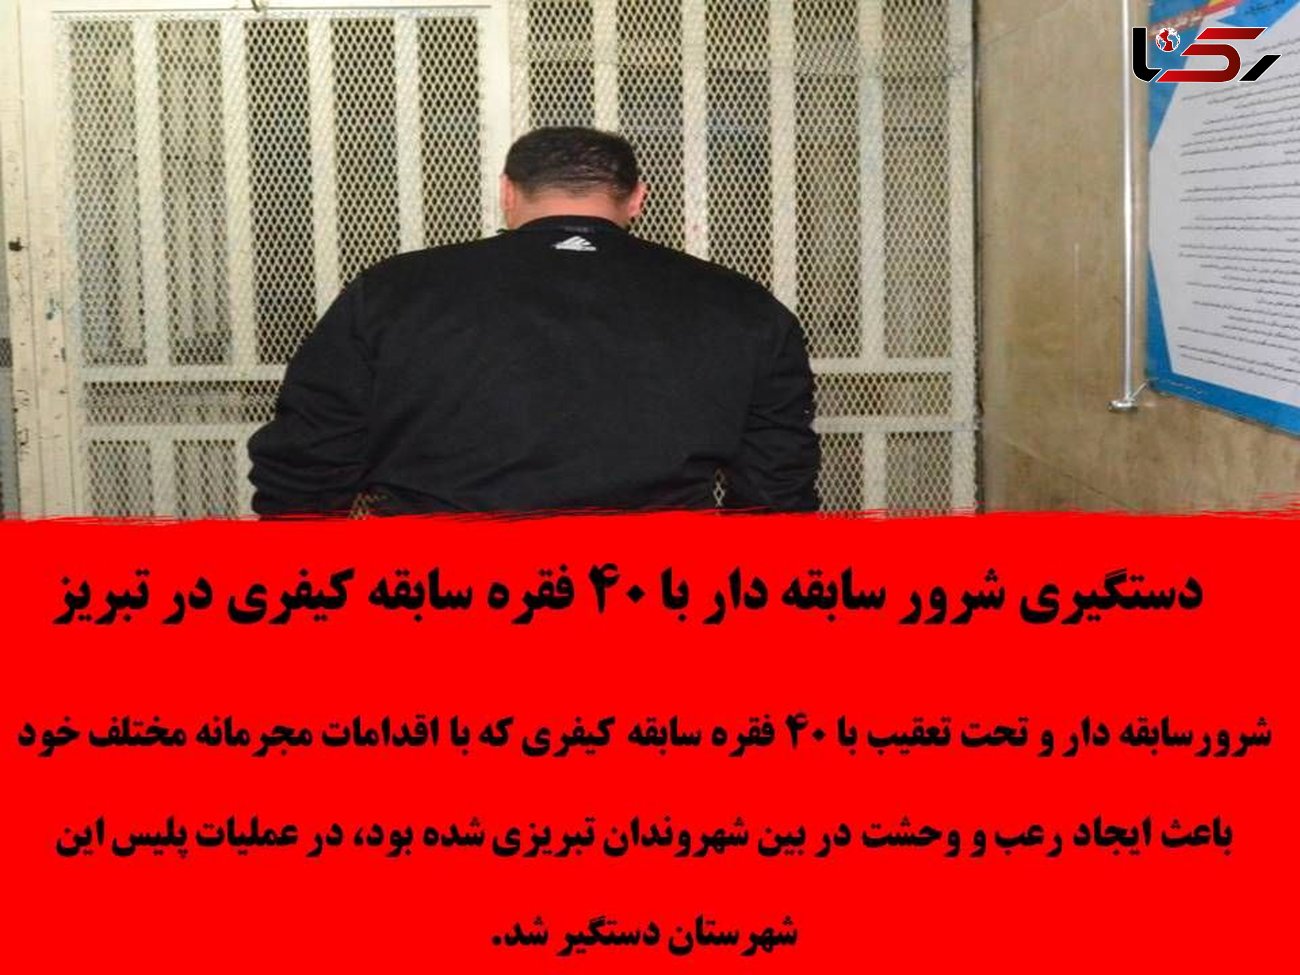 دستگیری شرور سابقه دار با ۴۰  سابقه زندان در تبریز